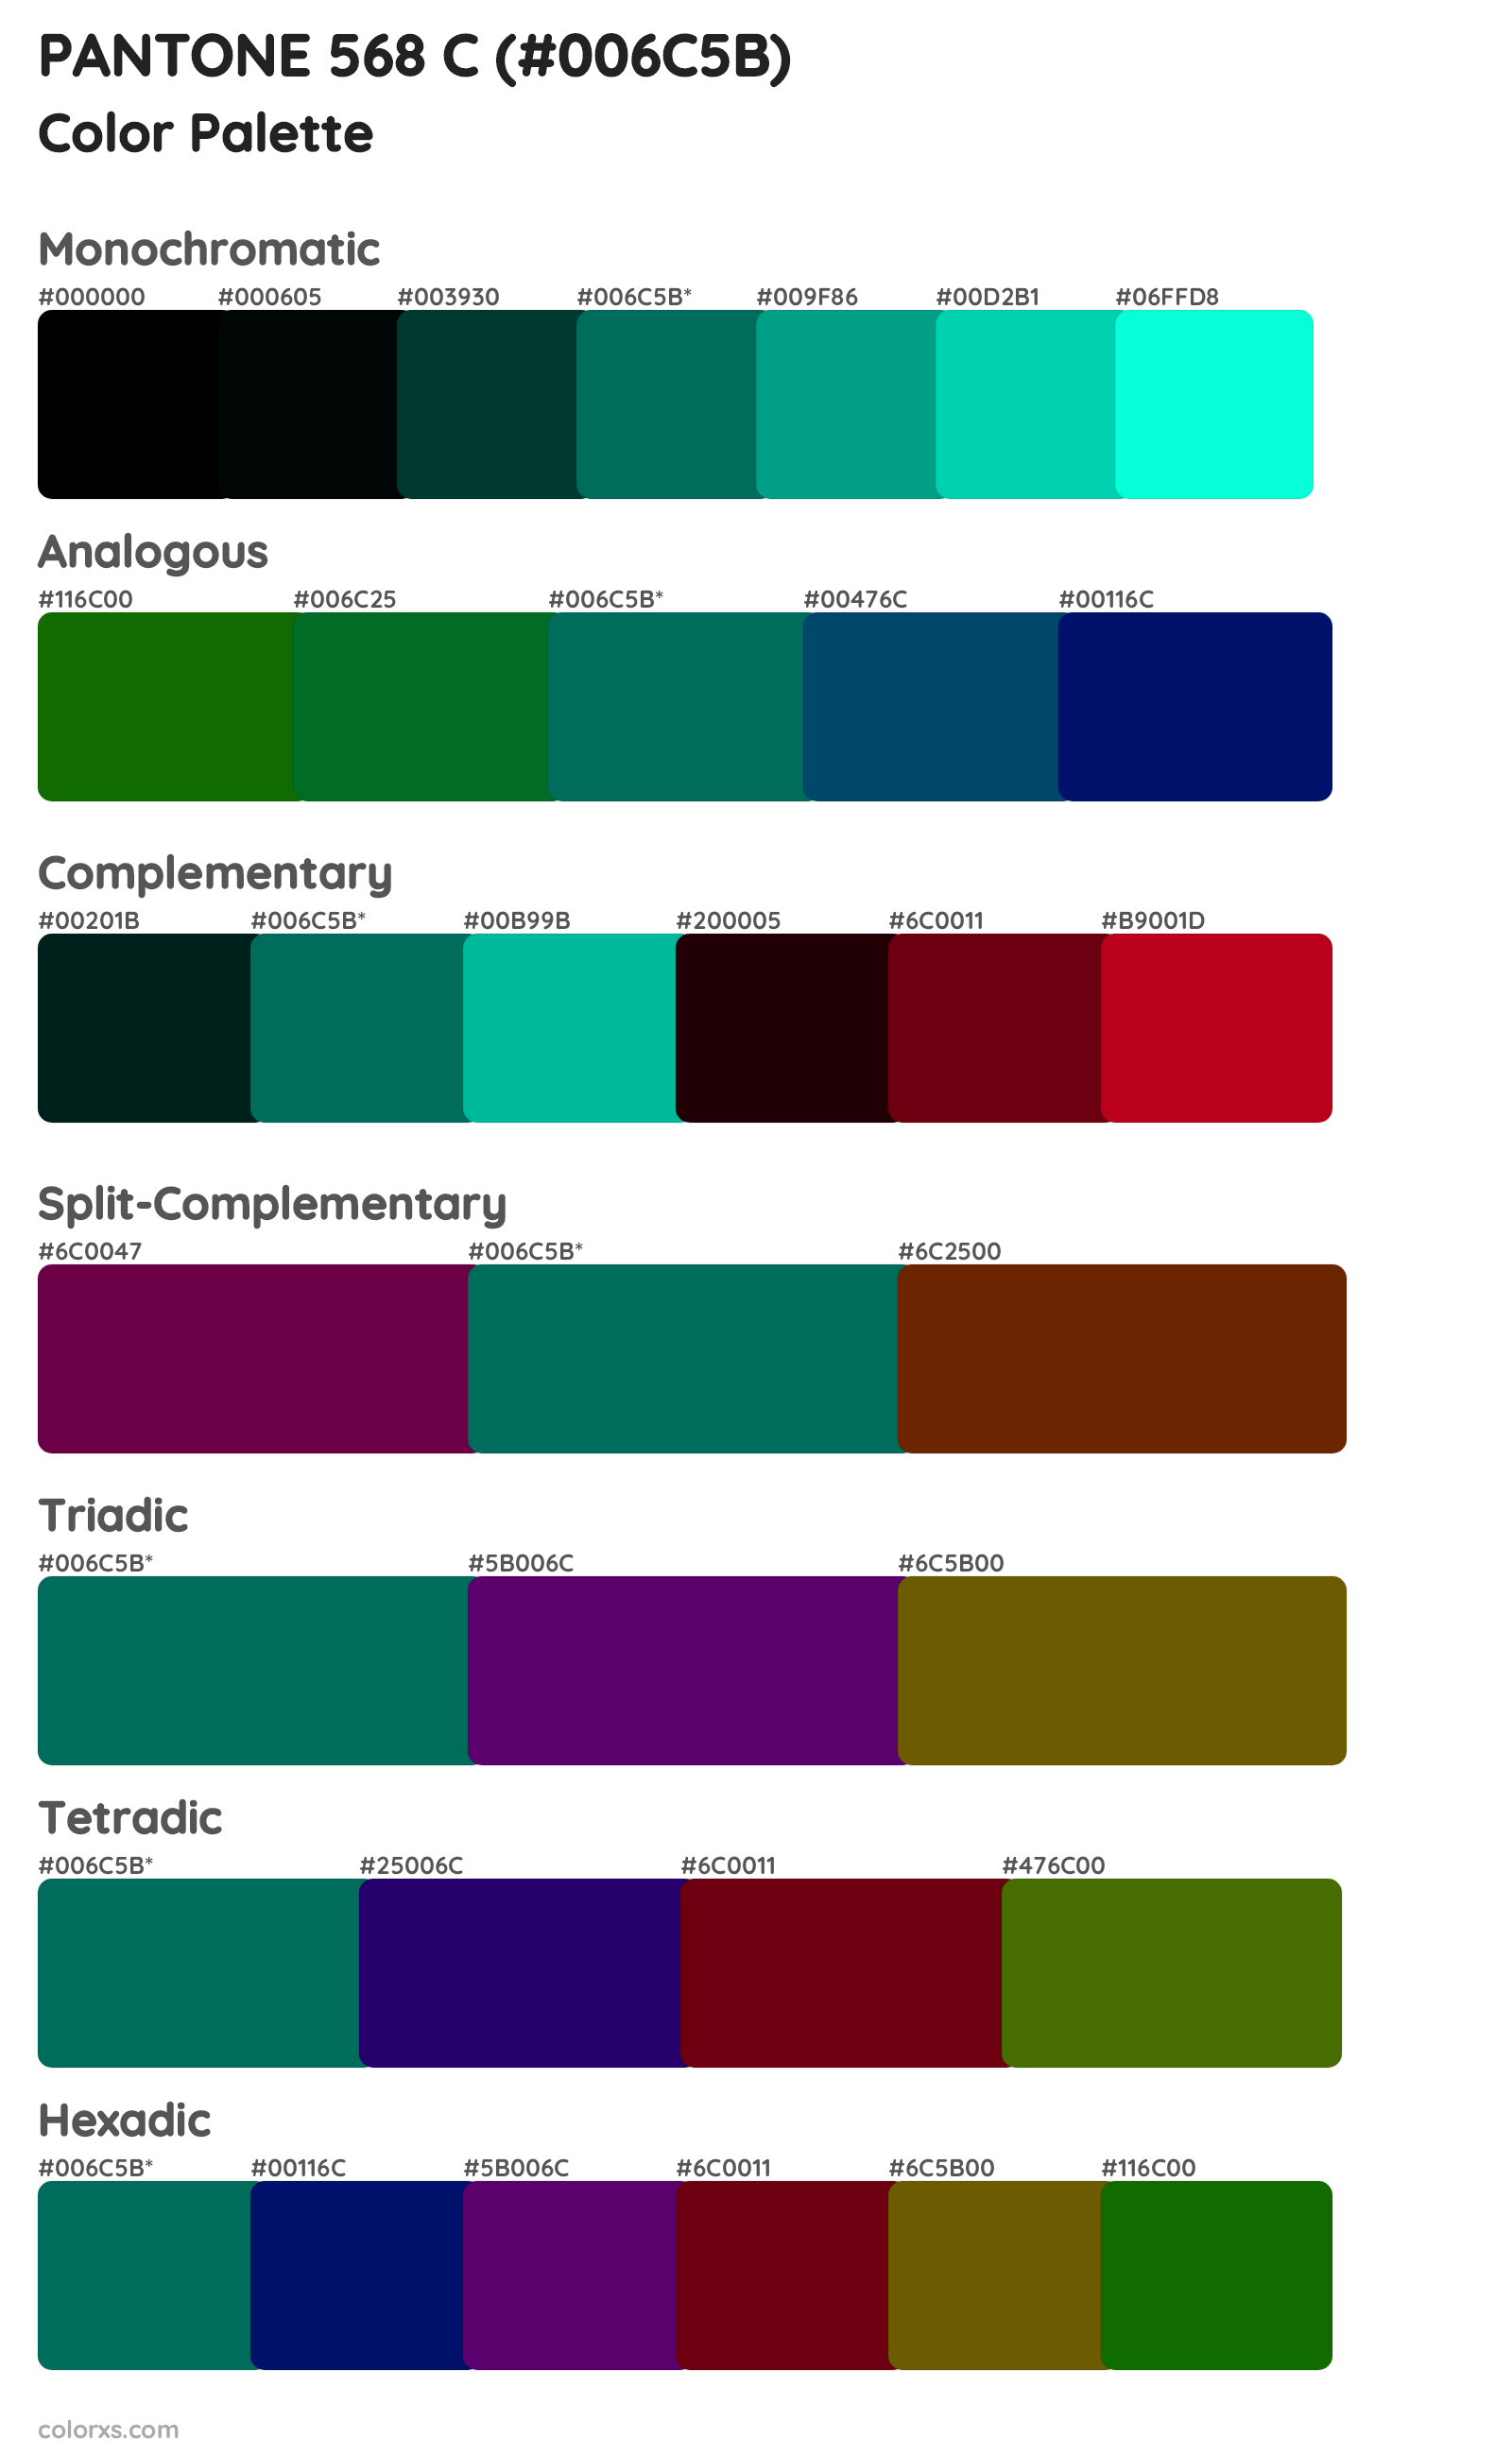 PANTONE 568 C Color Scheme Palettes